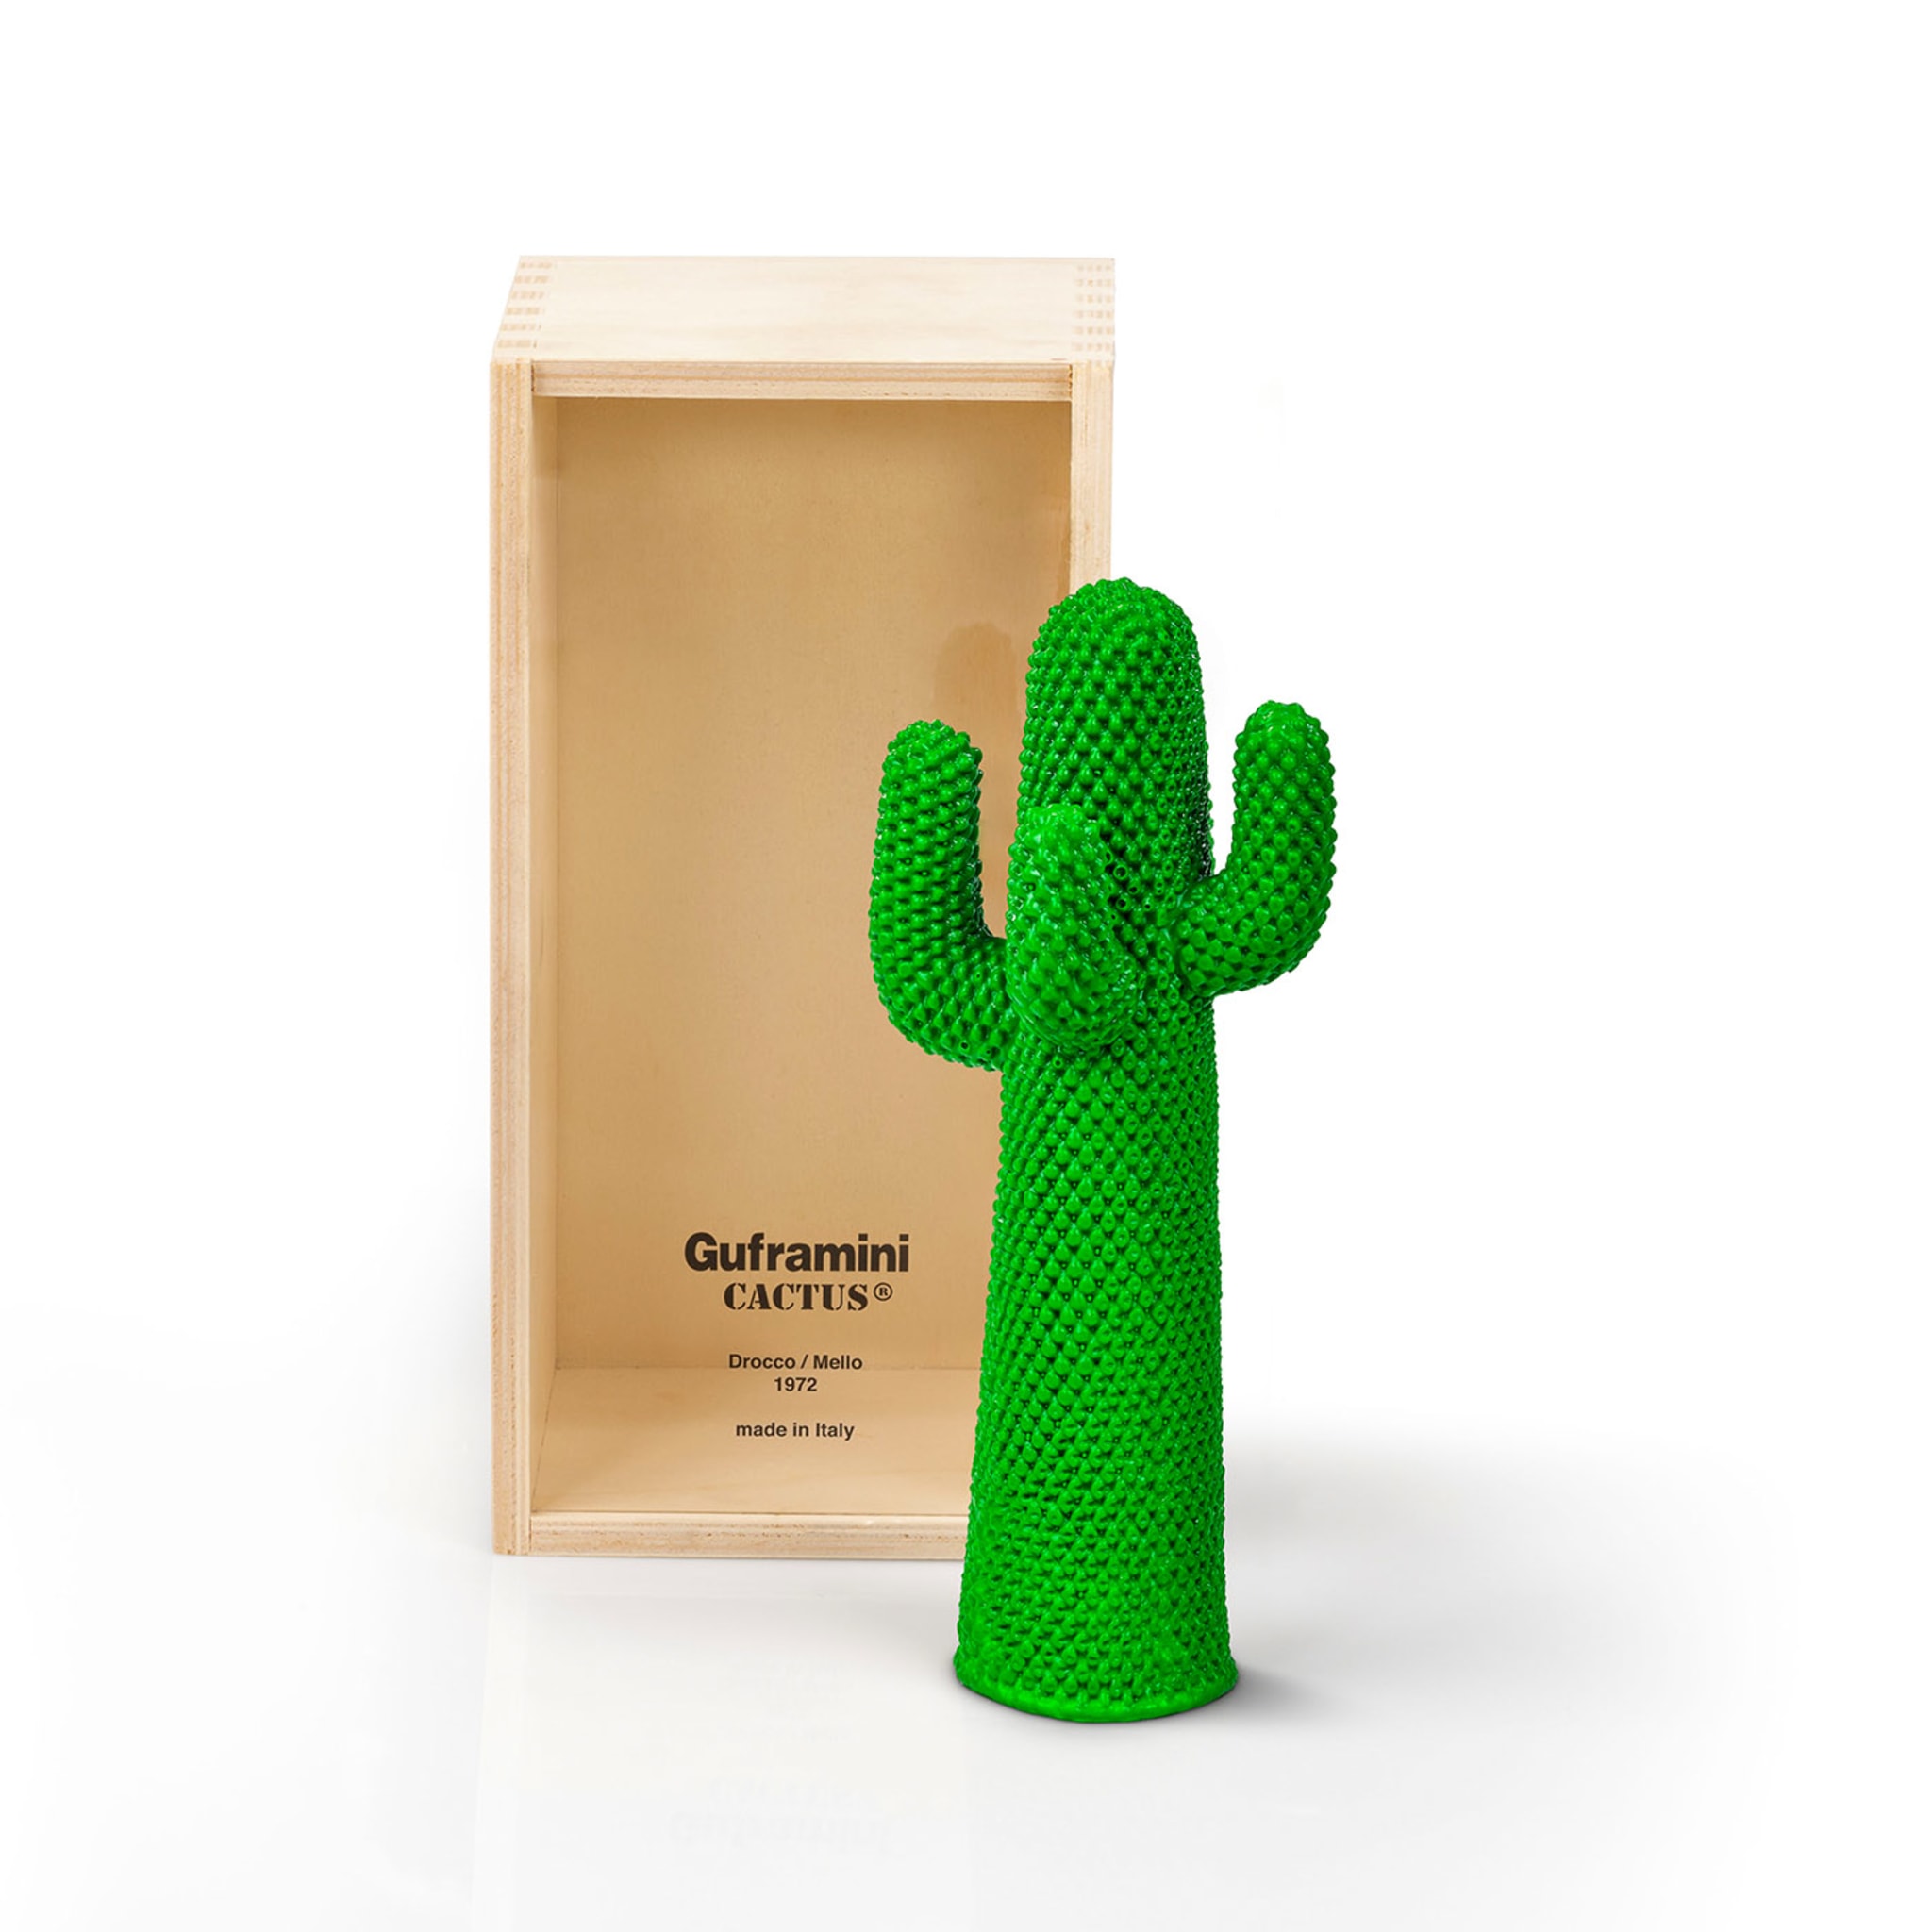 Guframini Cactus - Alternative view 2